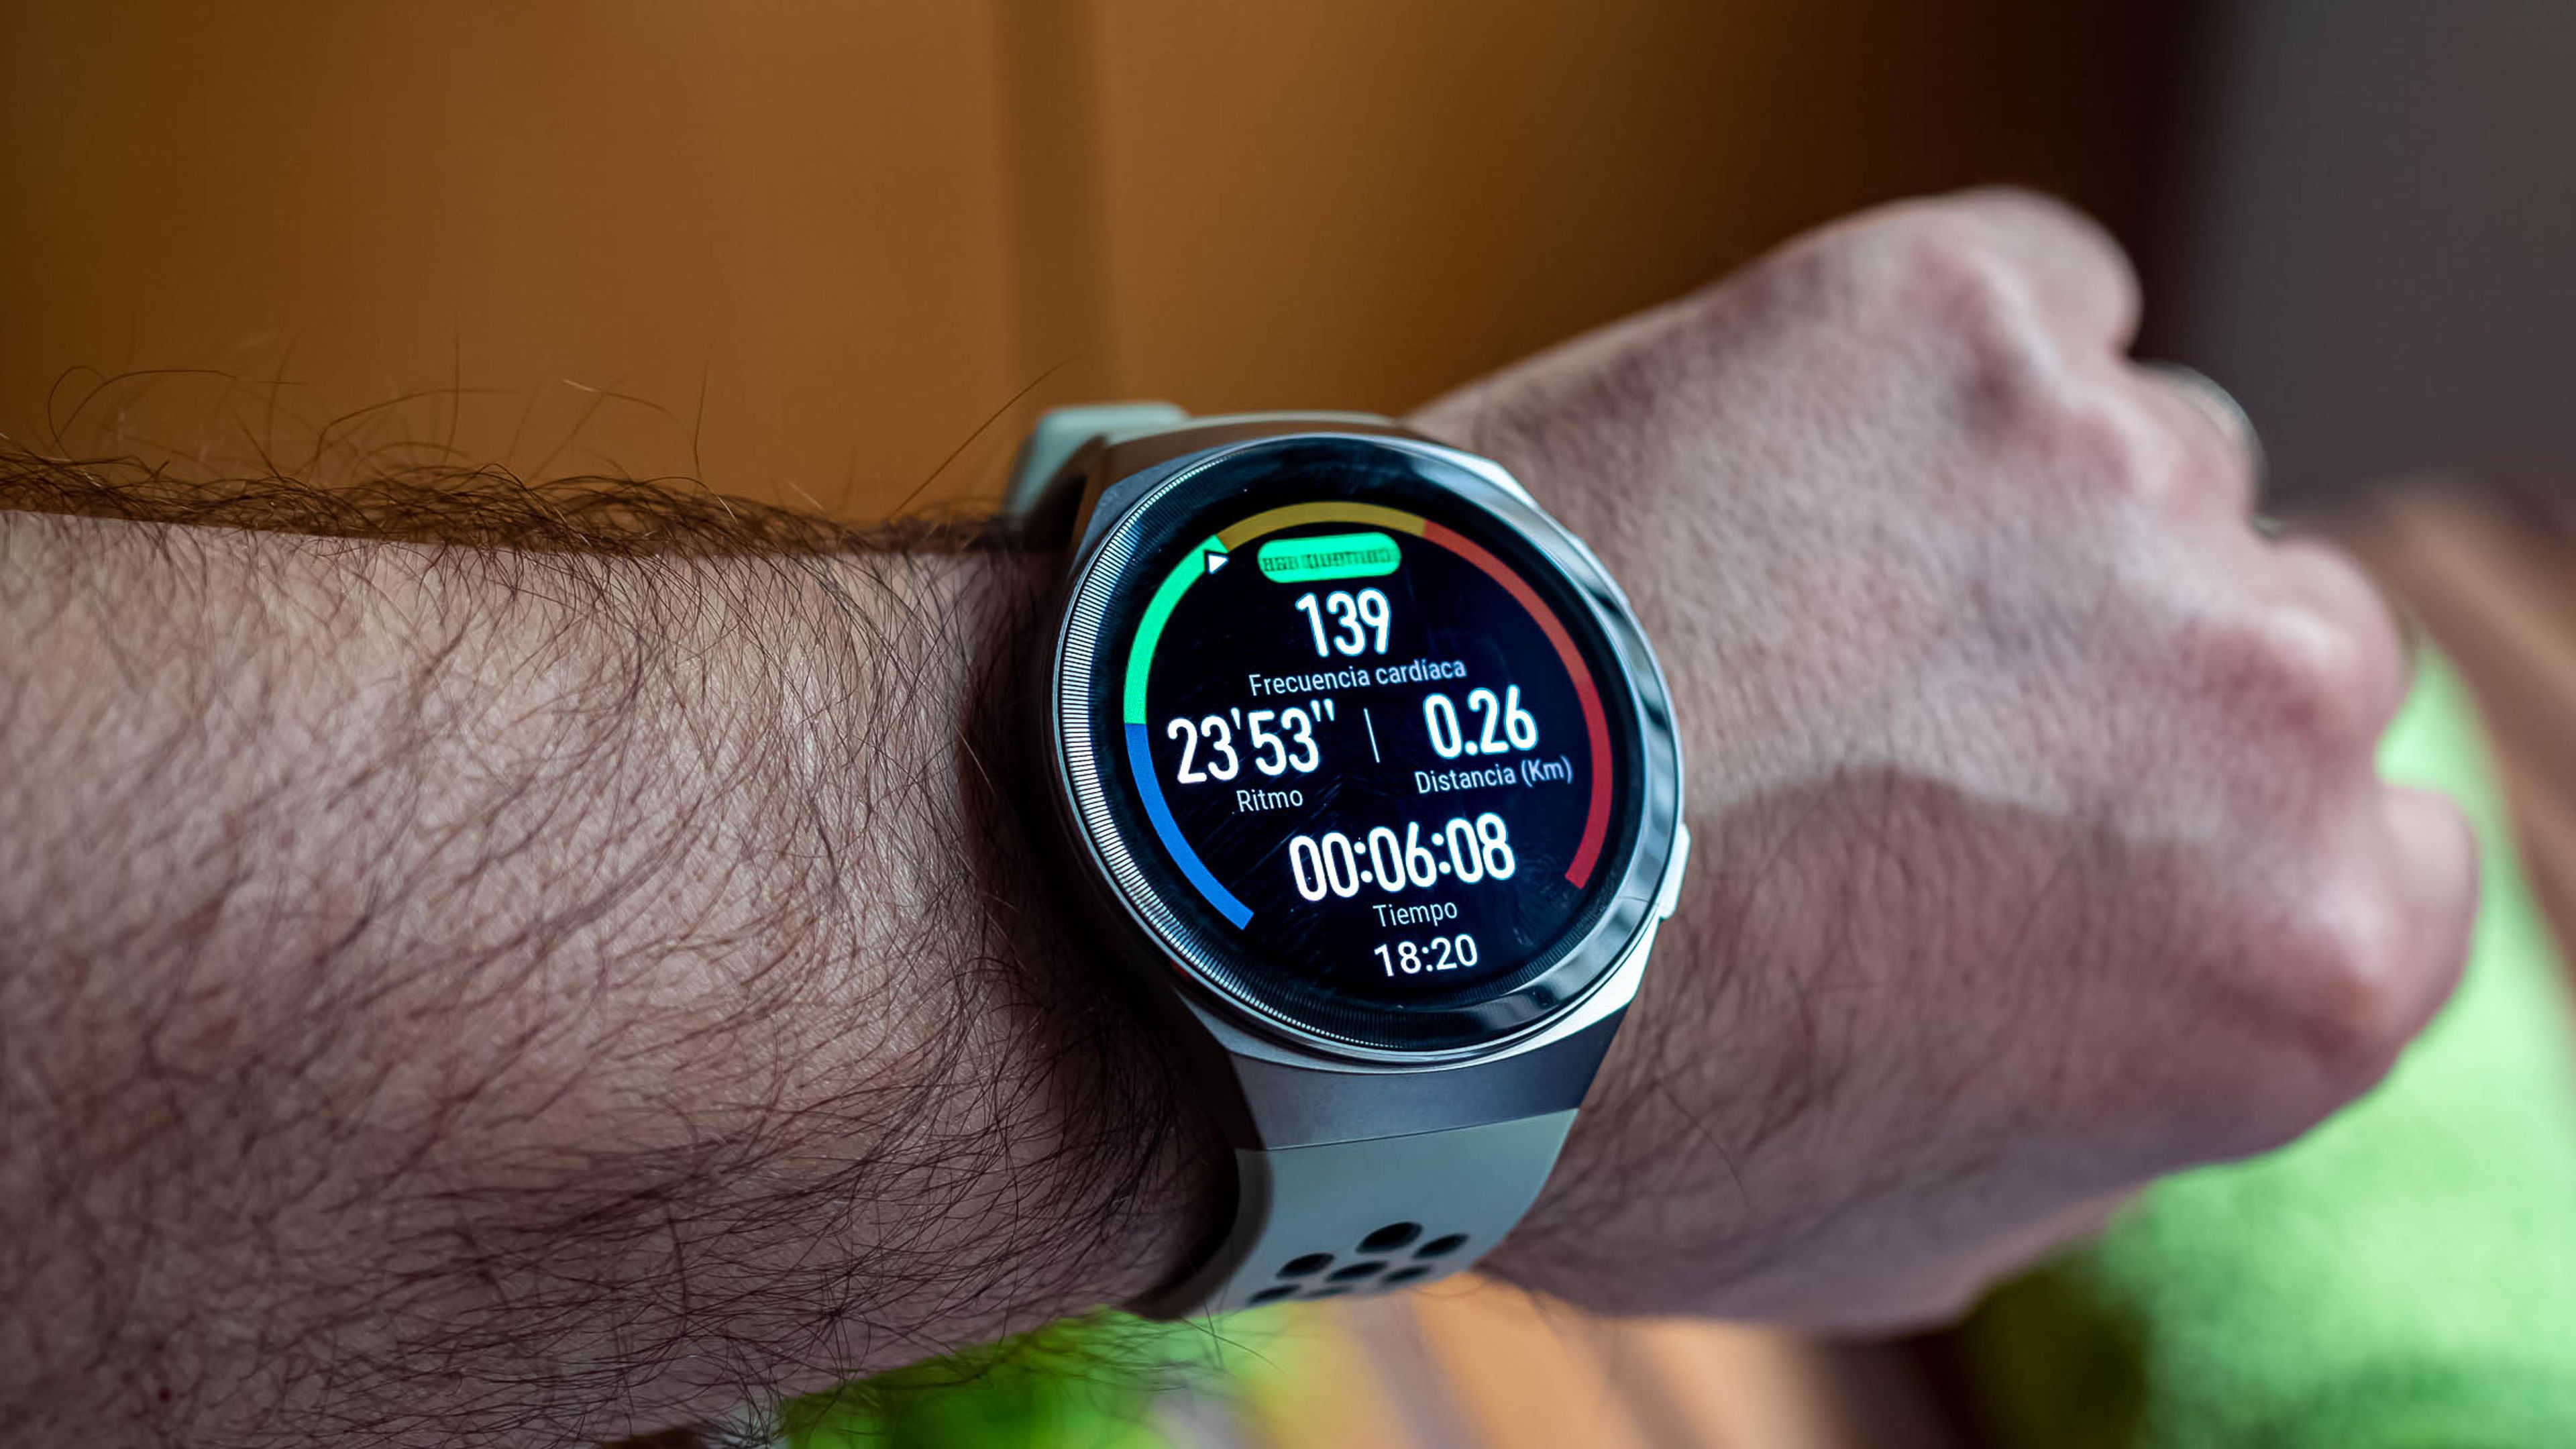 Huawei Watch GT 2e: conoce todo lo que ofrece este reloj inteligente, DEPOR-PLAY